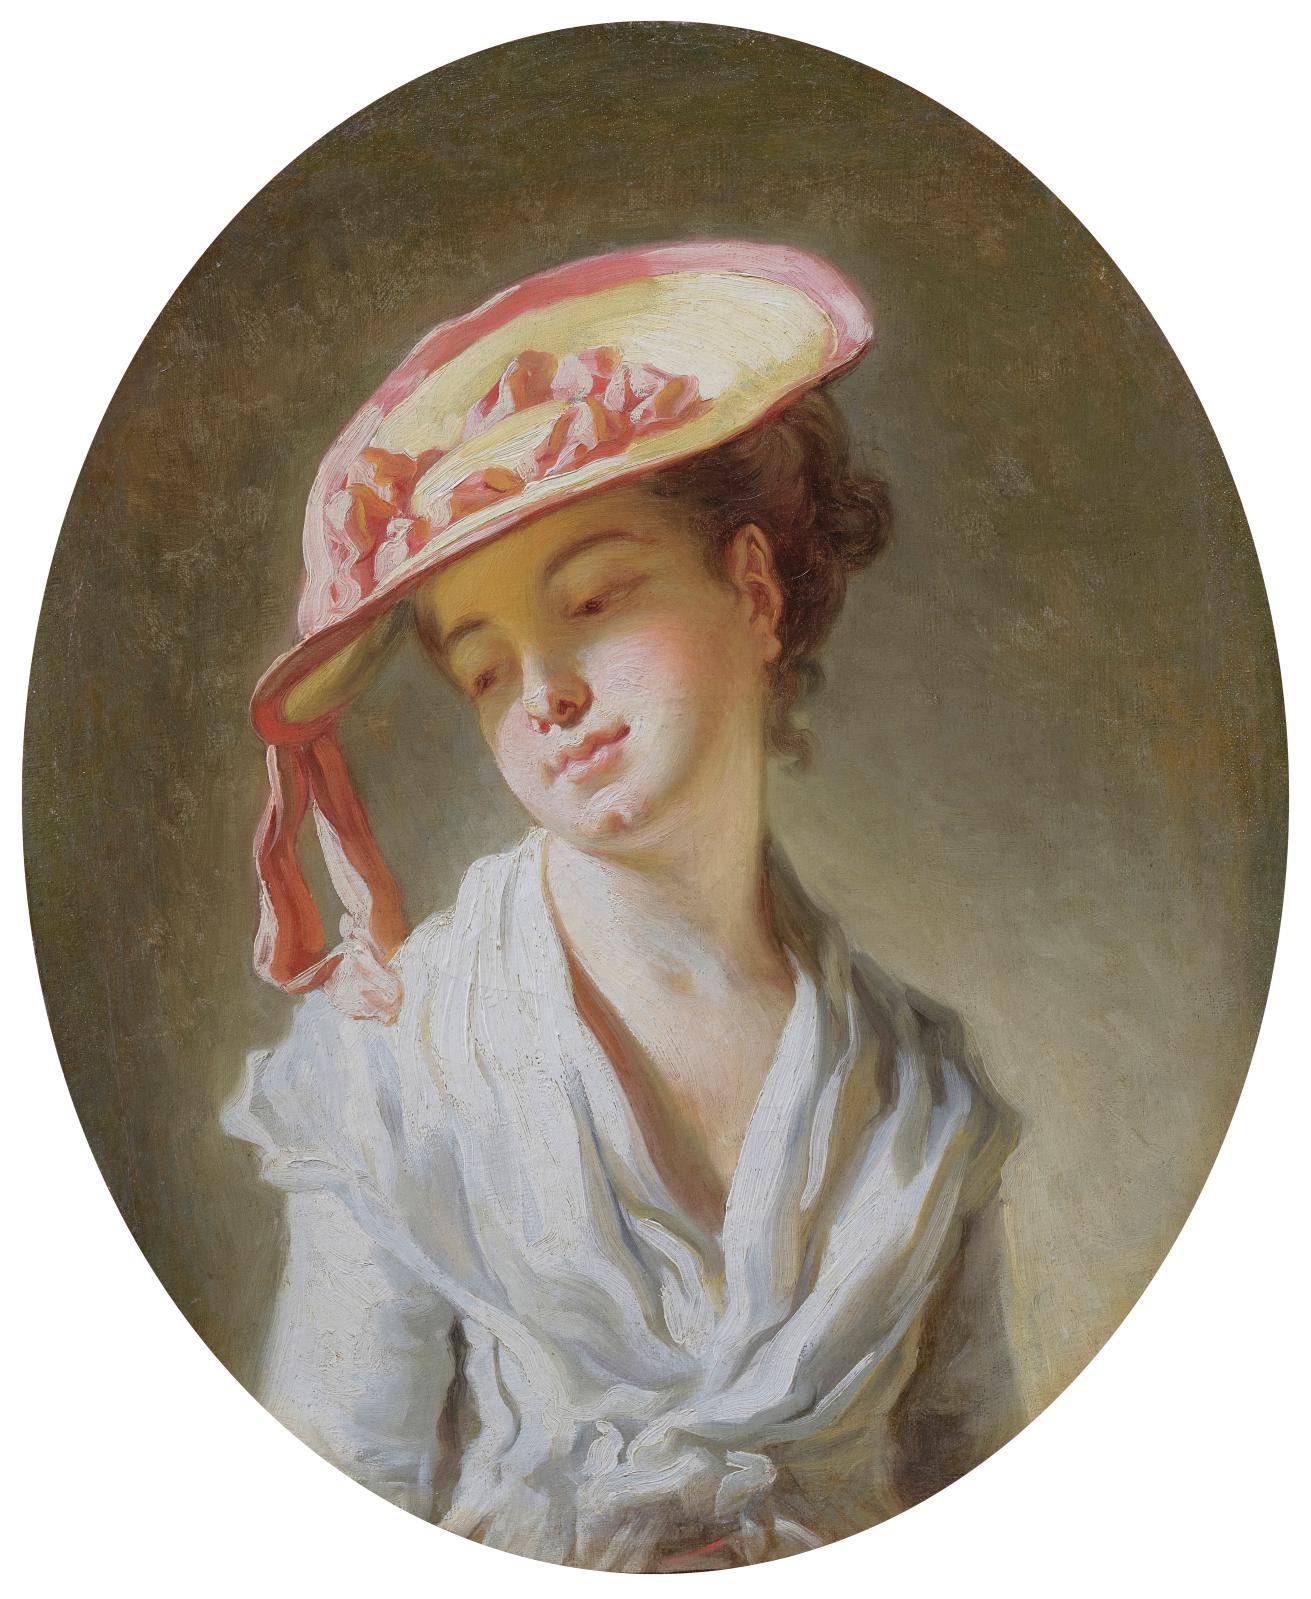 Jeune fille au chapeau, un tableau de Fragonard redécouvert